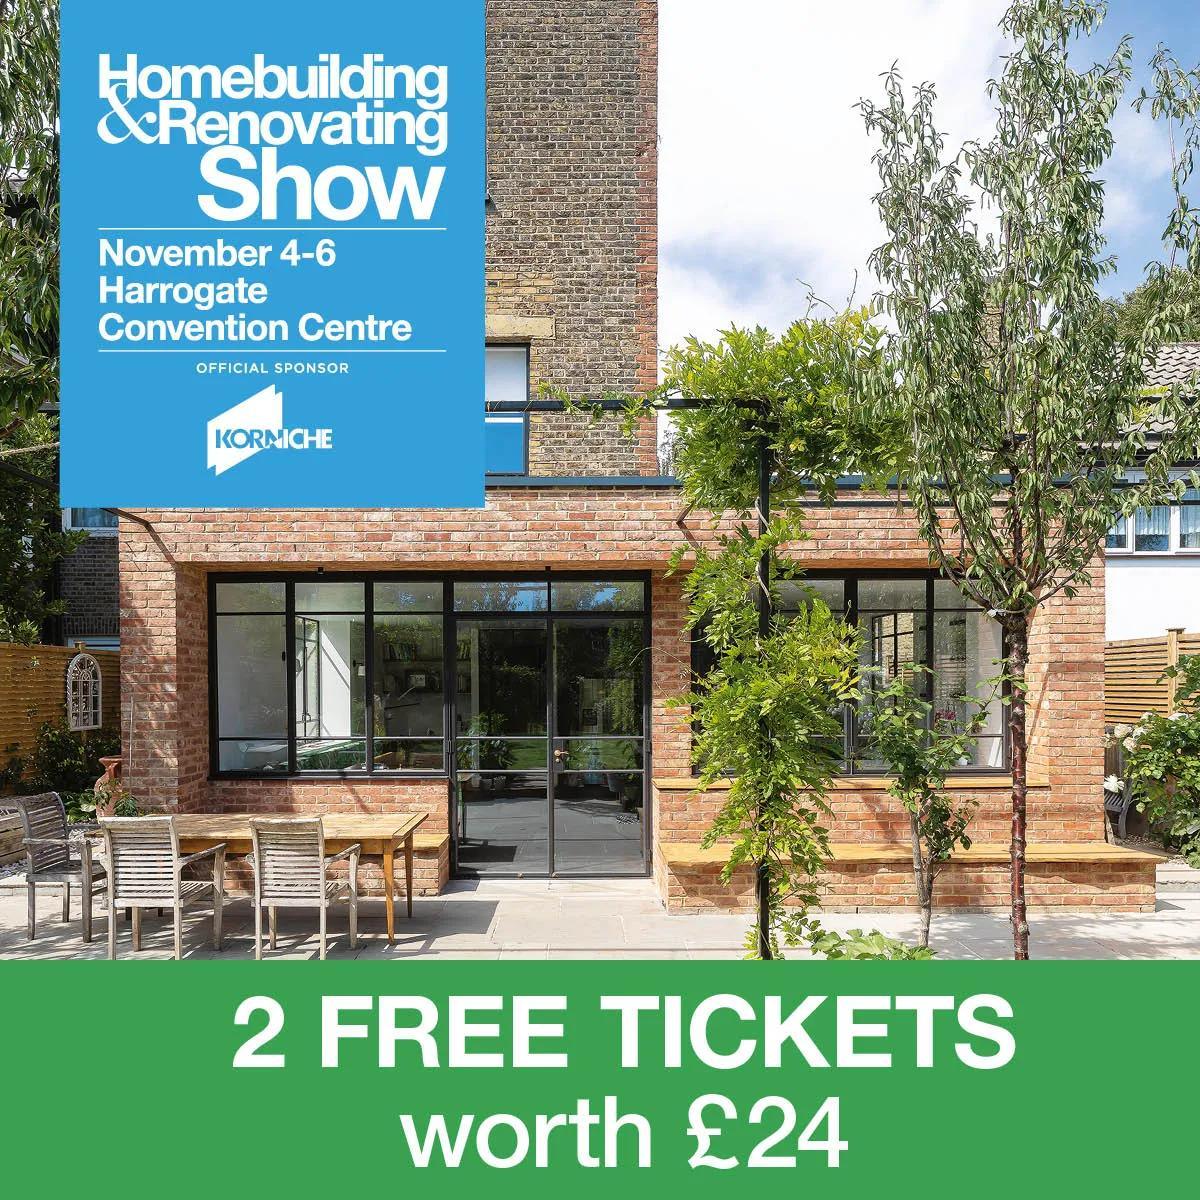 Homebuilding & Renovating Show in Harrogate.